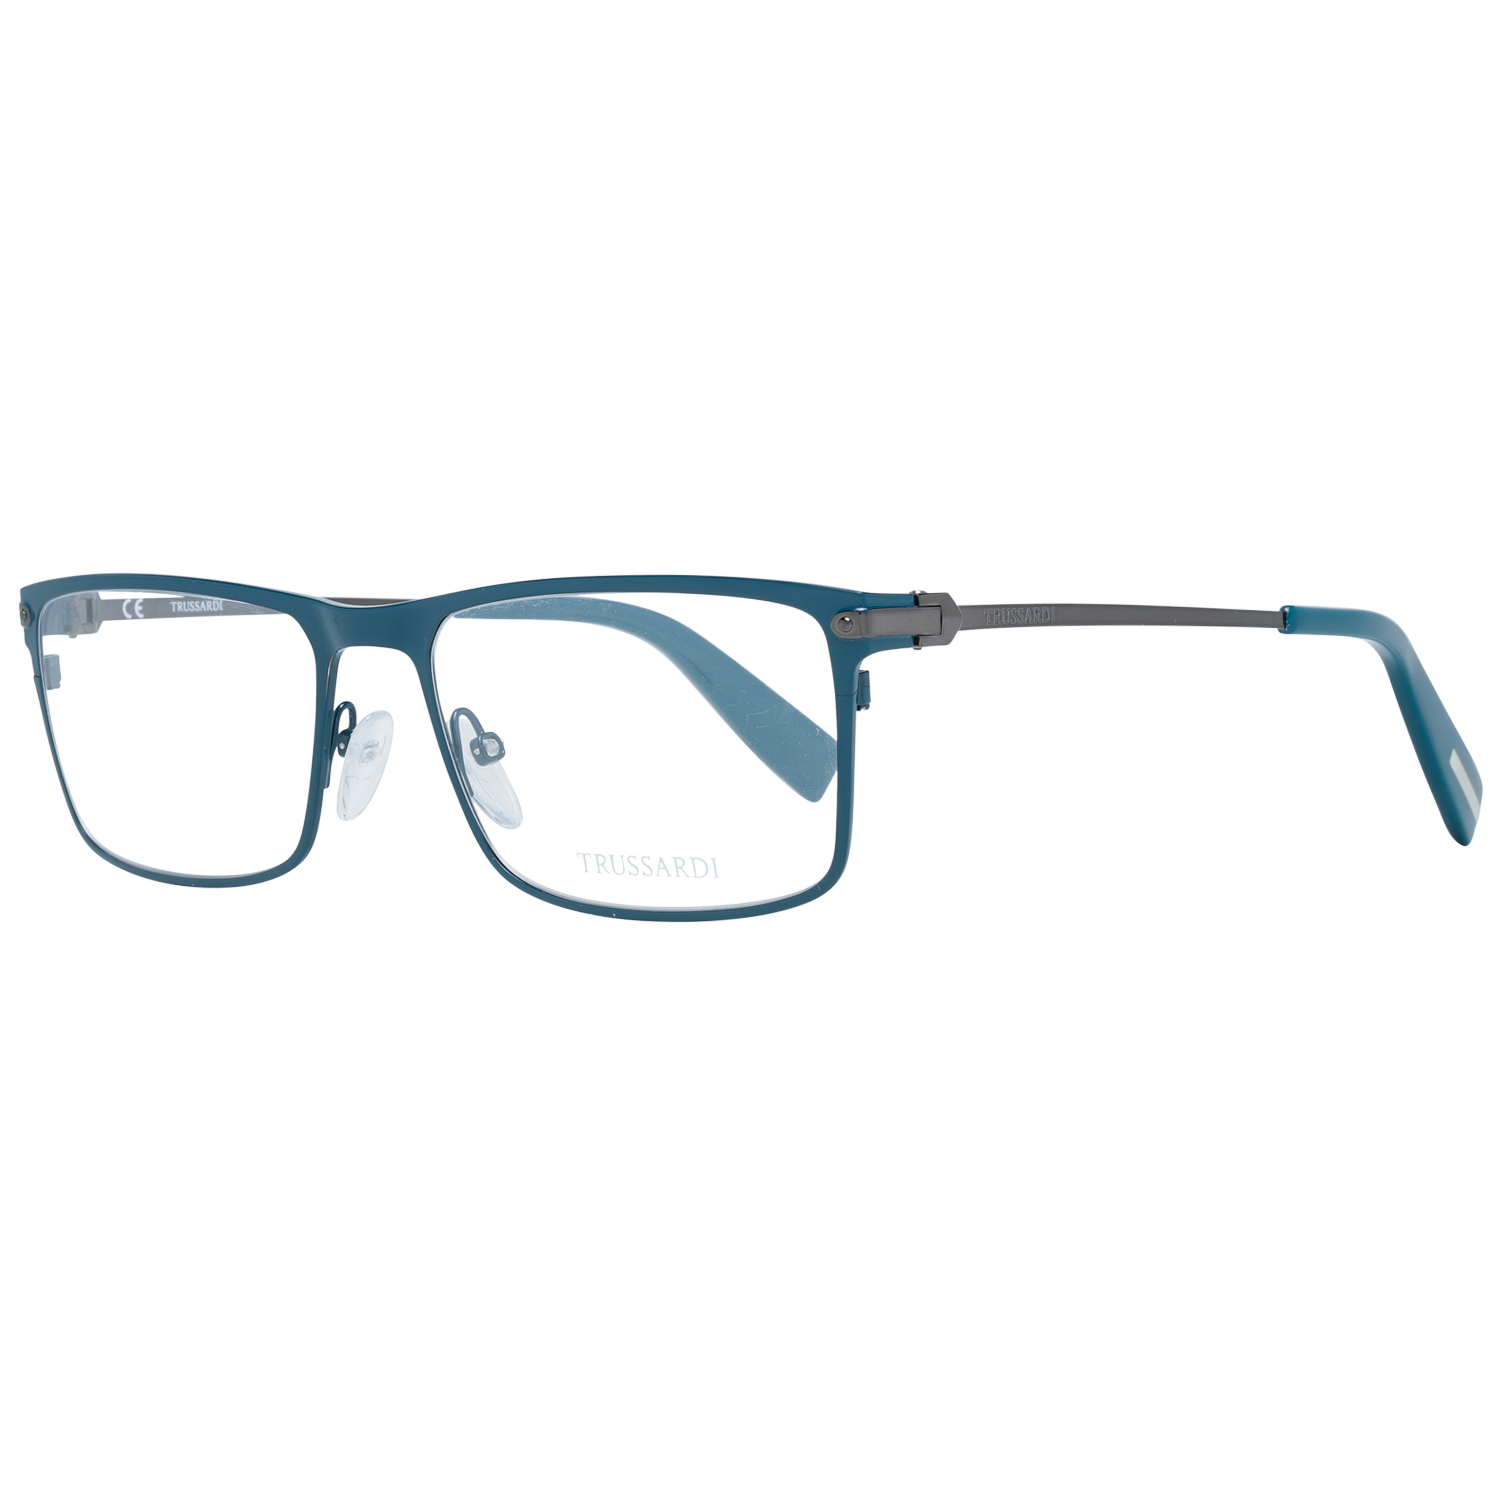 Trussardi Frames Trussardi Glasses Frames VTR024 08UE 55 Eyeglasses Eyewear UK USA Australia 